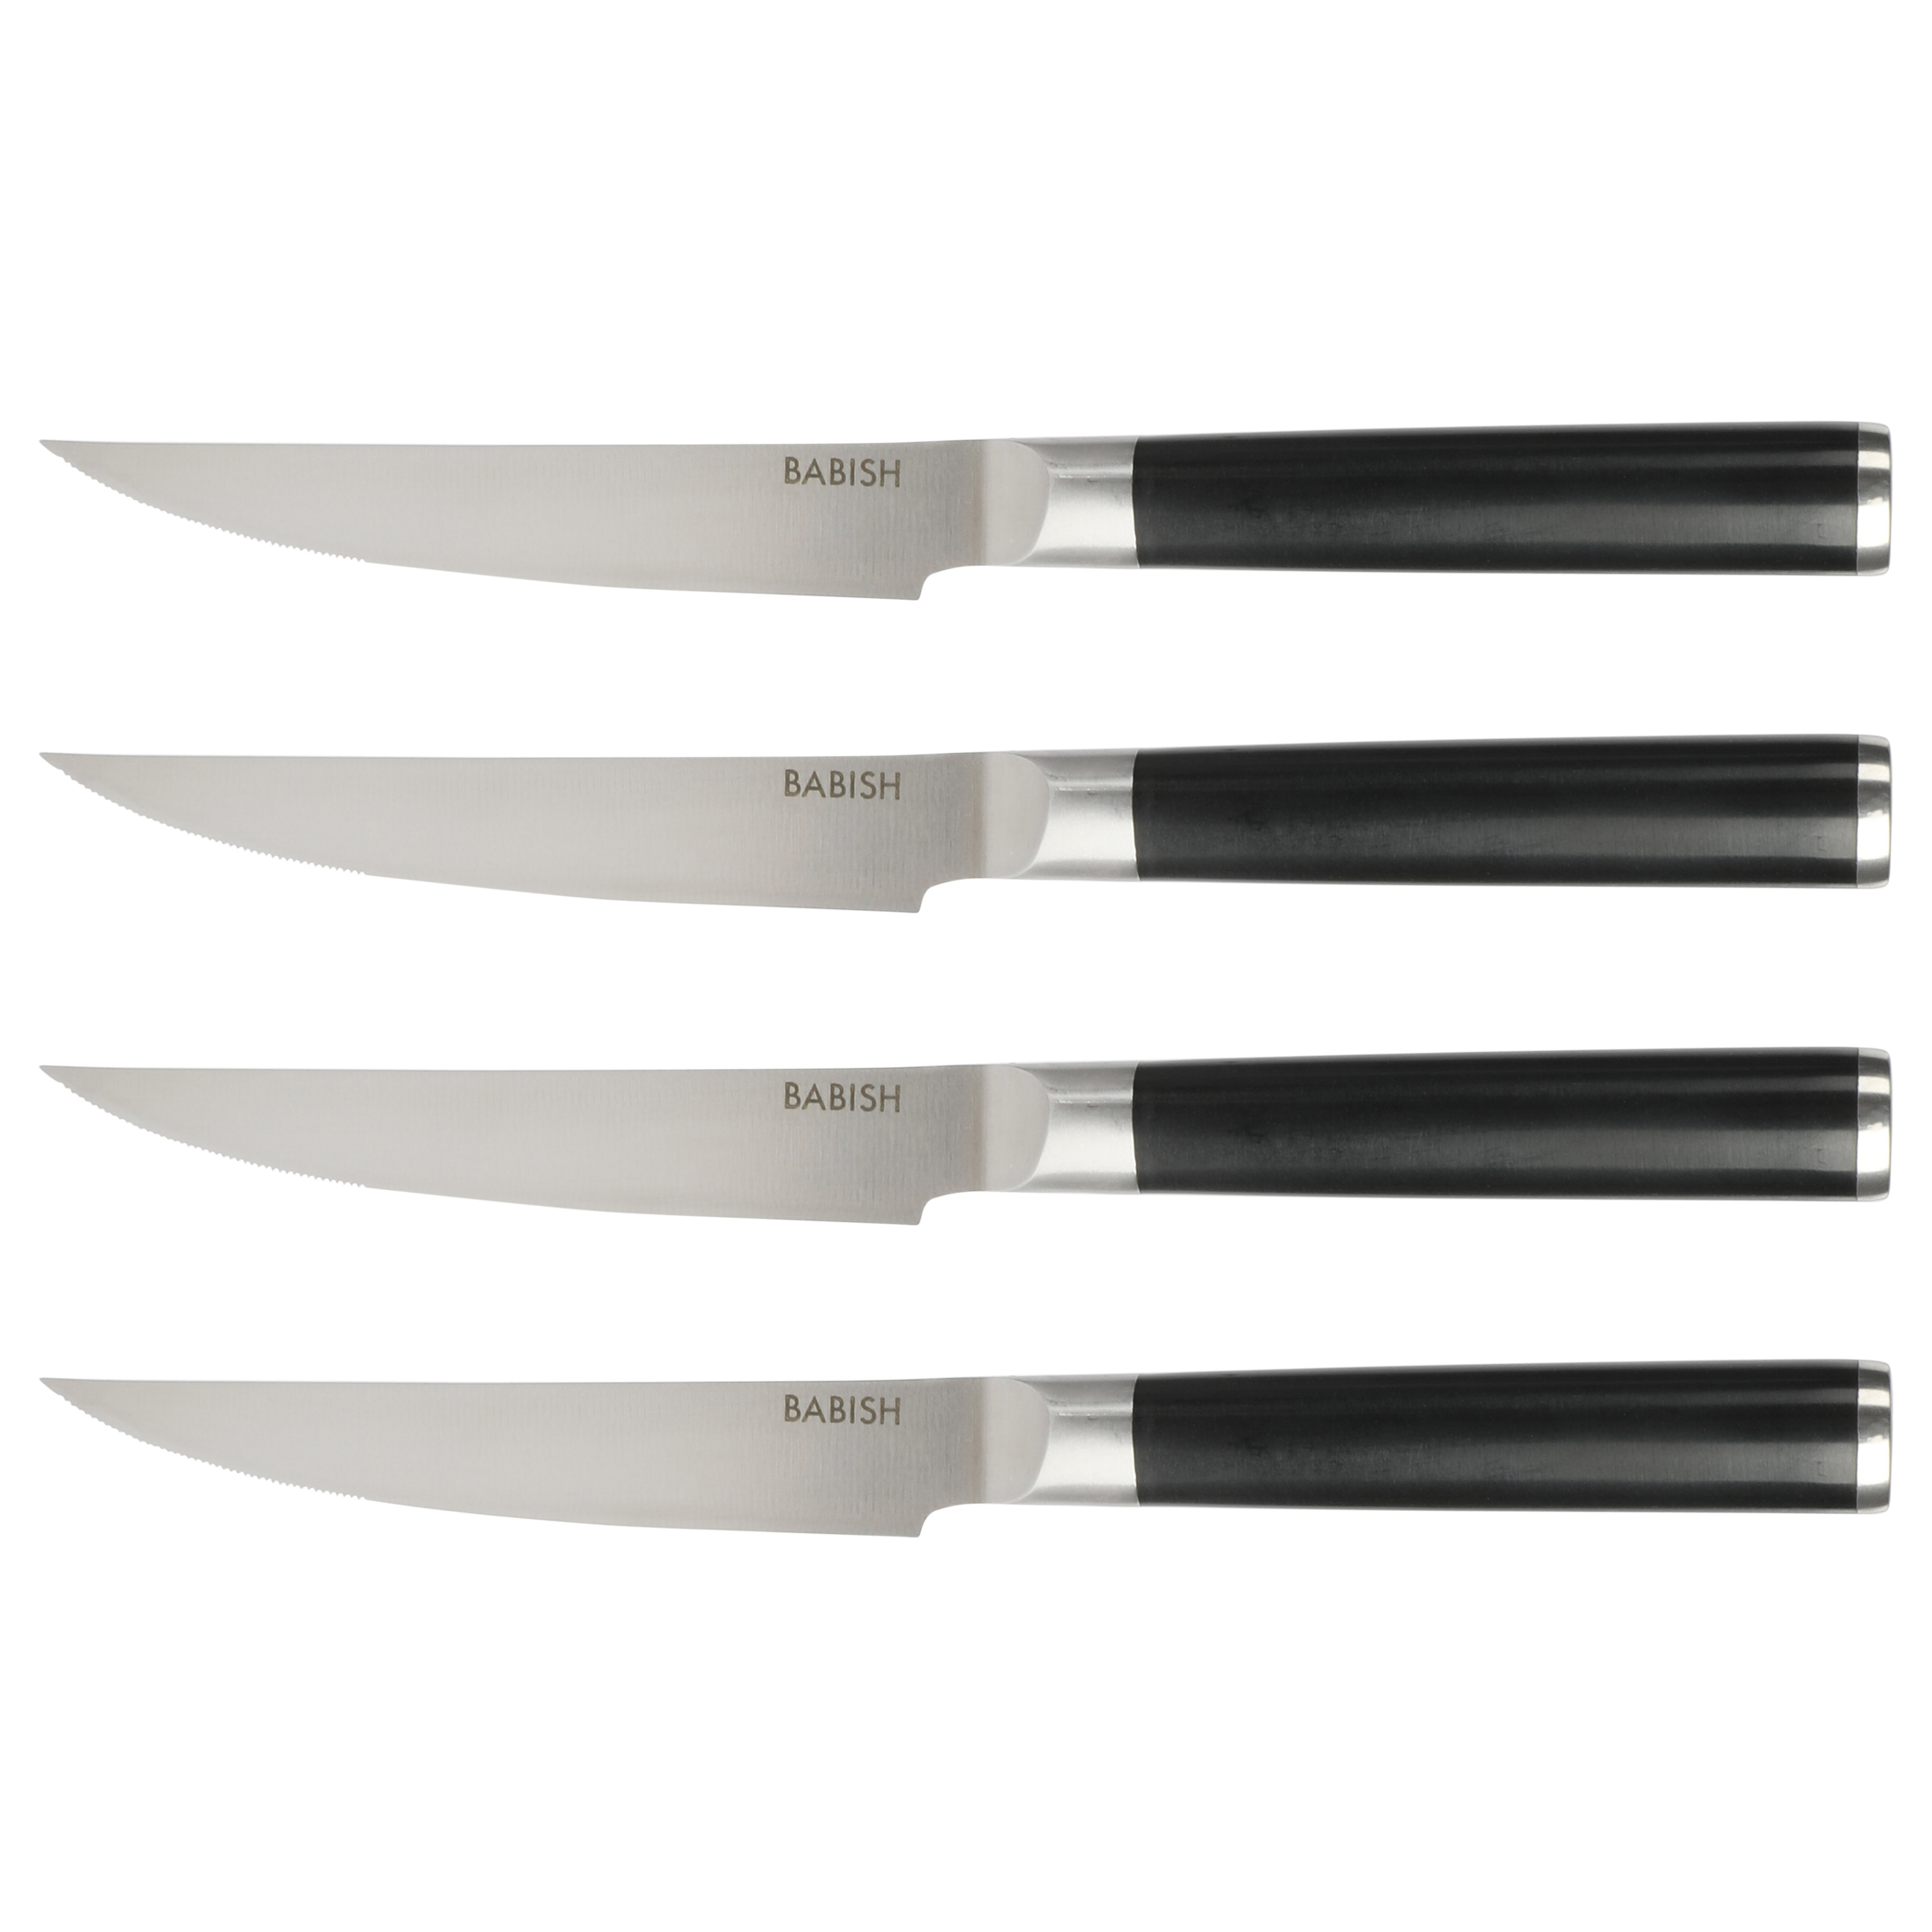 https://assets.wfcdn.com/im/47700646/compr-r85/2567/256706033/babish-4-pack-high-carbon-german-steel-5-steak-knife-set.jpg